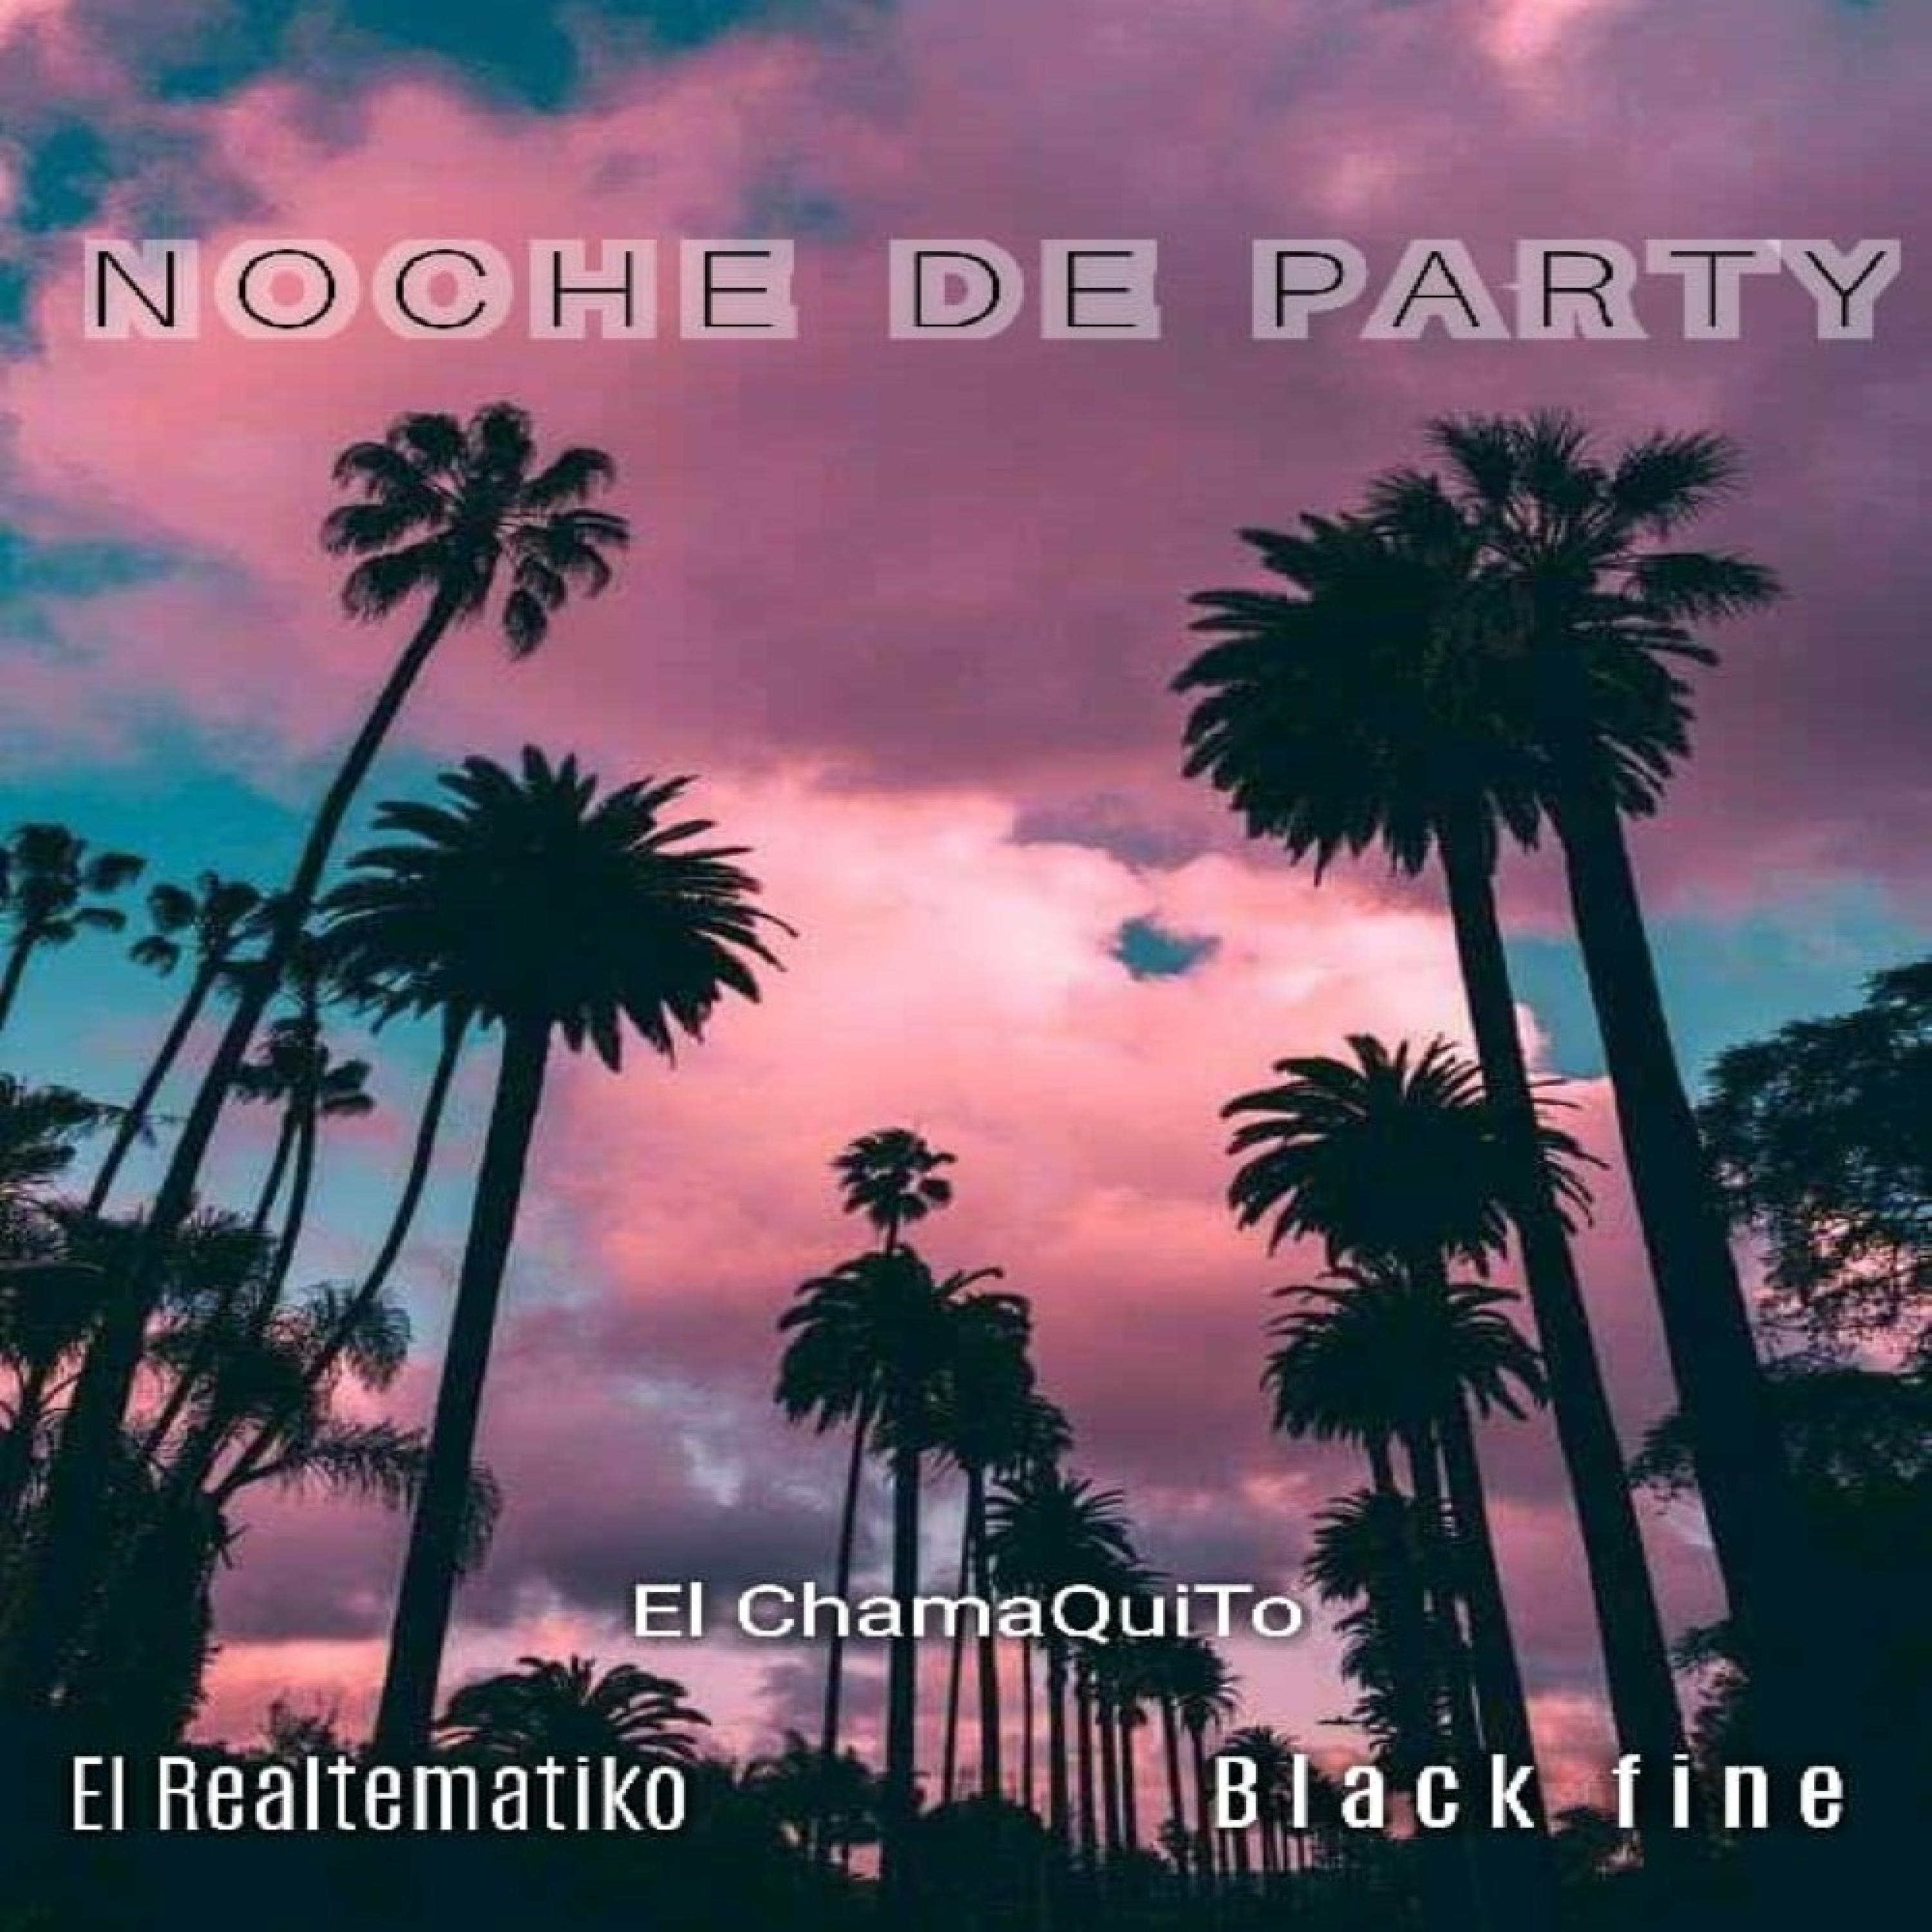 black fine - Noche de Party (feat. Sistematiko & ChamaQuito)